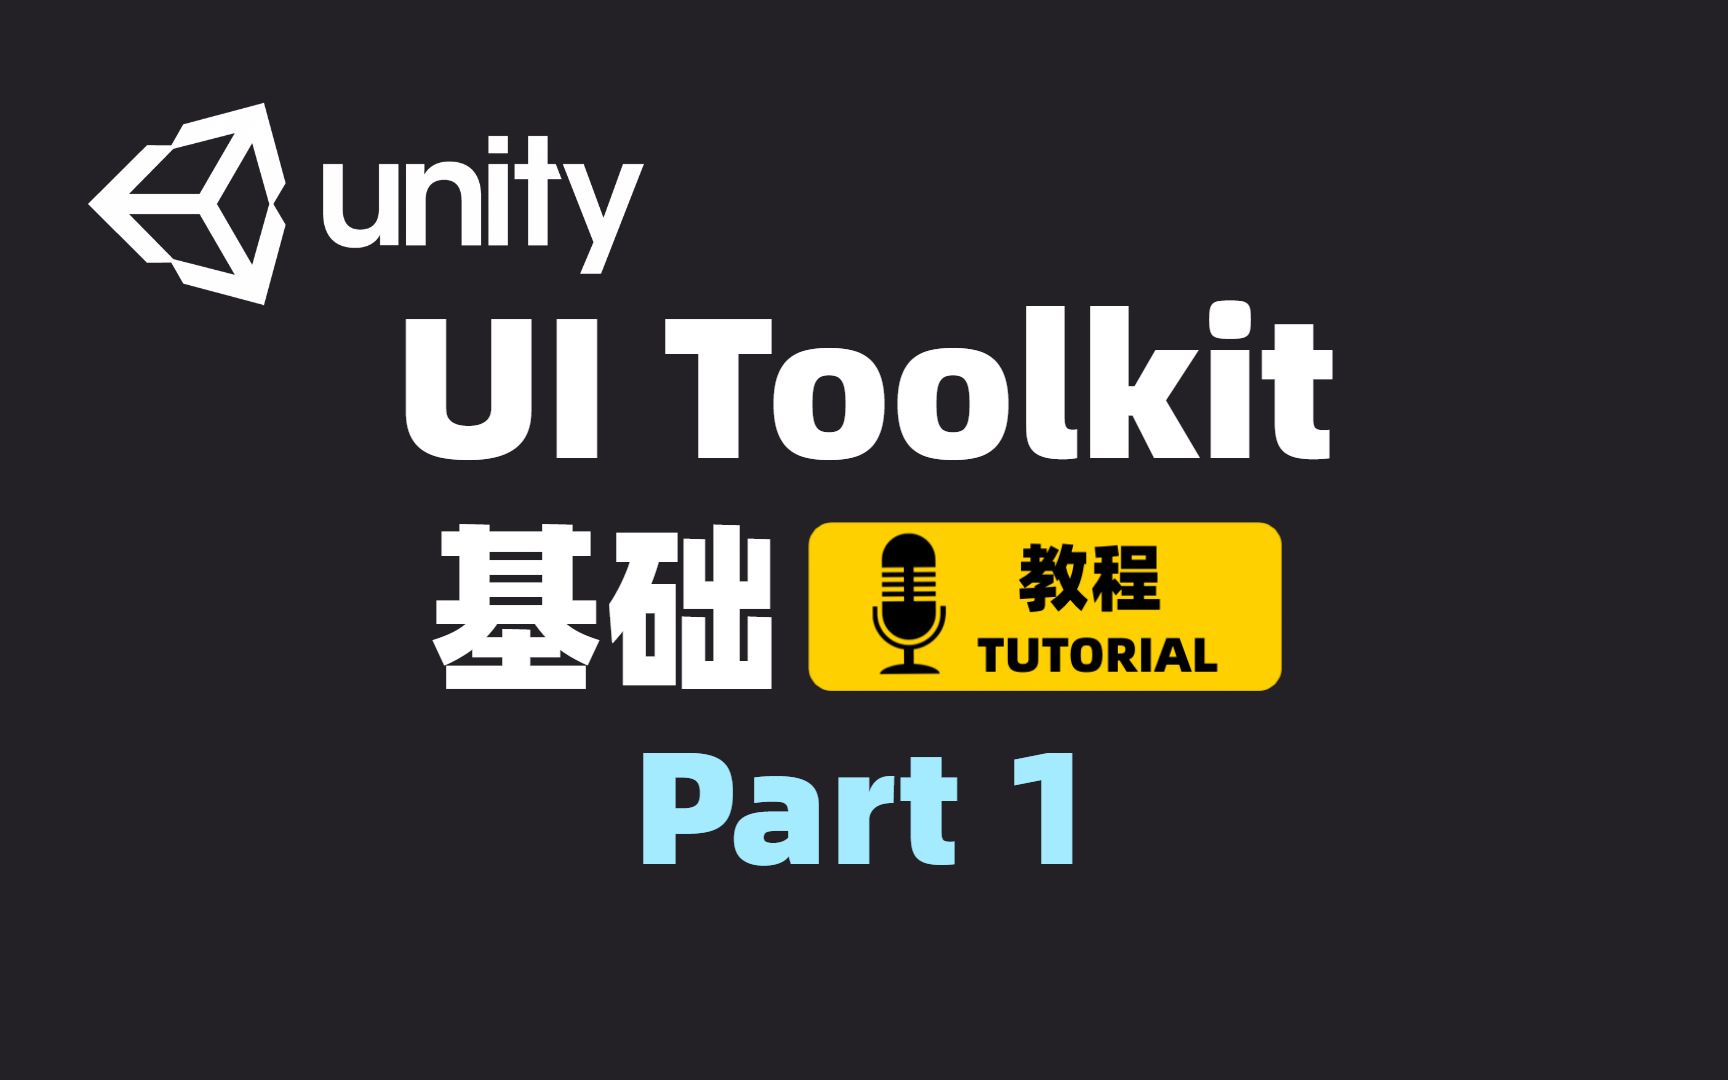 [Unity] UI Toolkit基础教程 Part 1 | 如何使用UI Toolkit | UI工具包 | JRPG教程项目前置